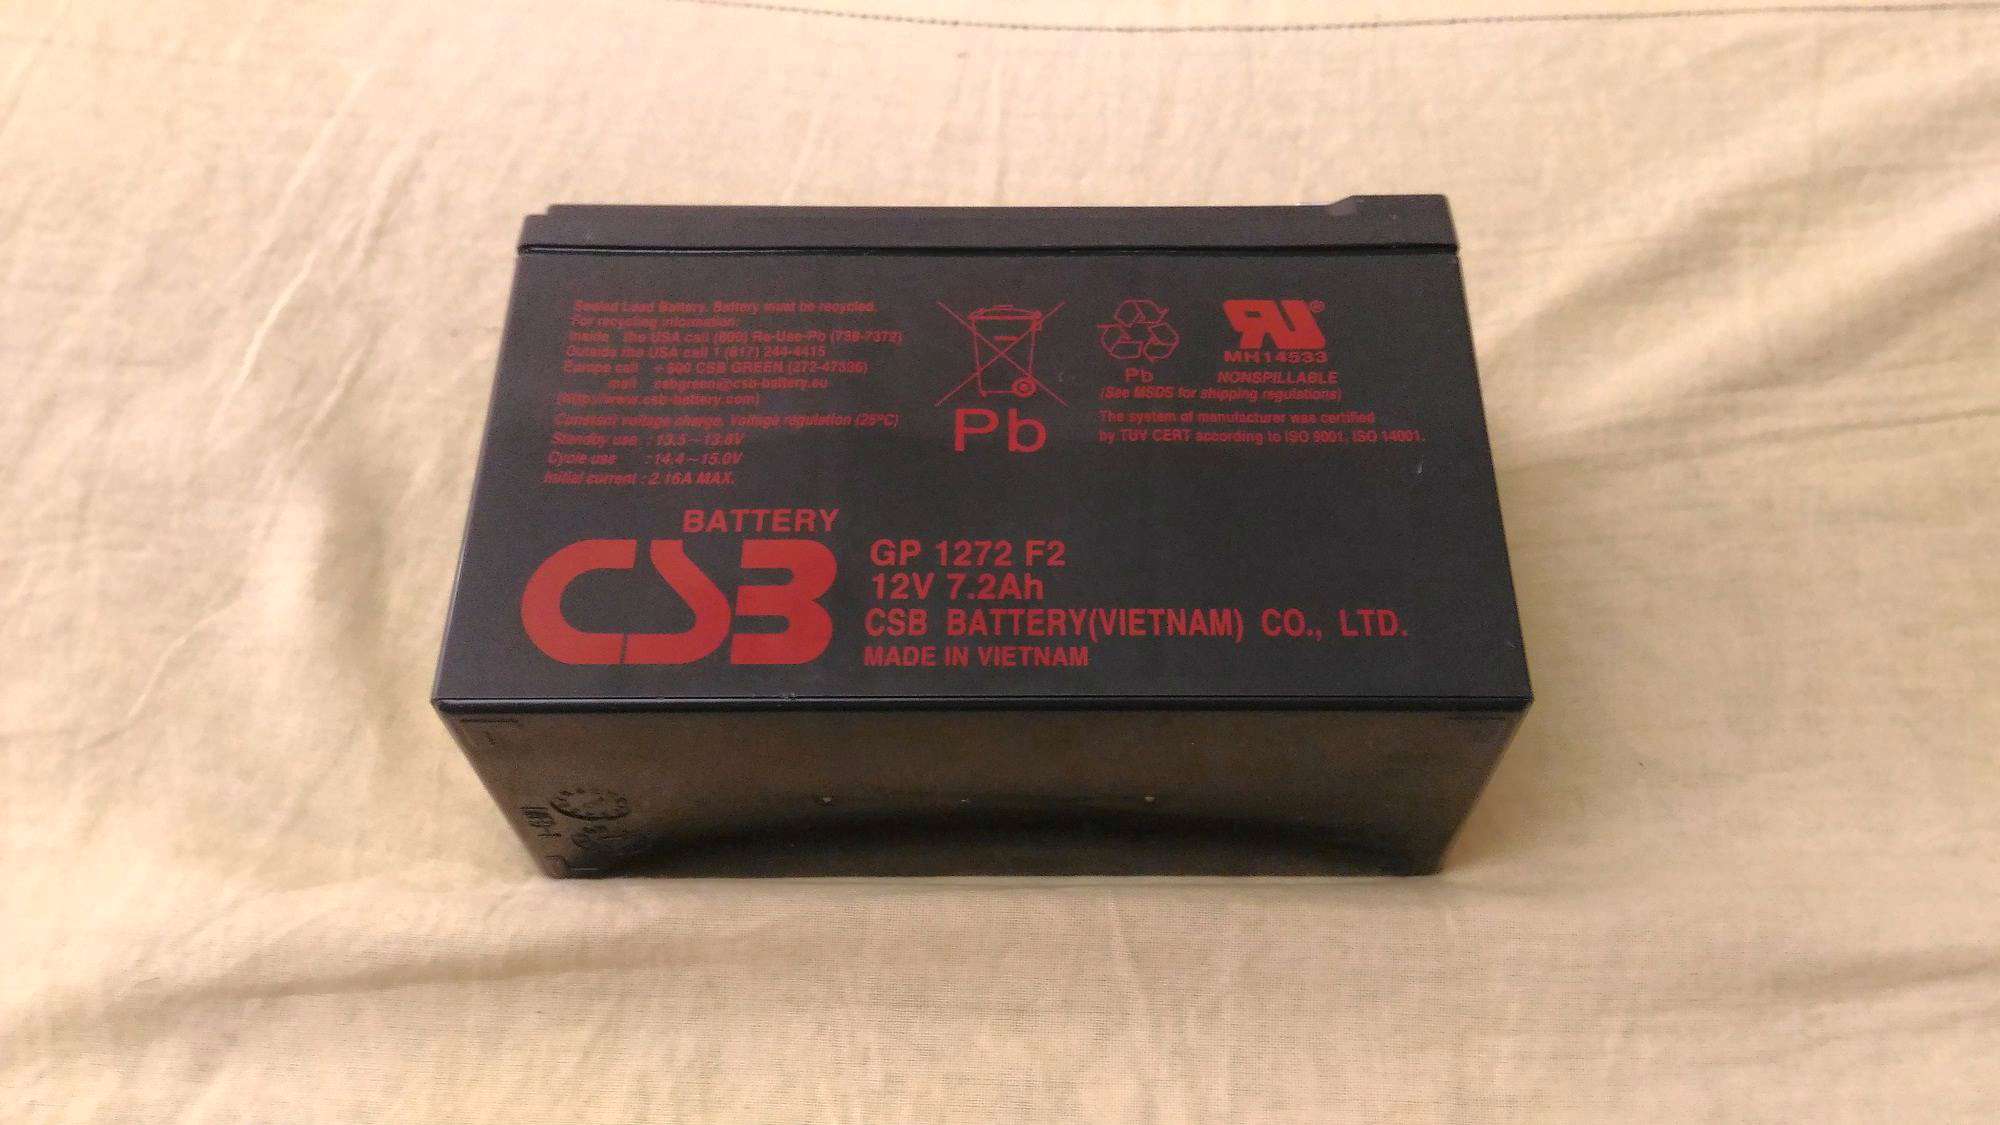 CSB GP 1272 f2 7.2Ah. Батарея аккумуляторная CSB gp1272 (12v/7.2Ah). Аккумуляторная батарея для ИБП CSB GP 1272 f2 12v 7.2Ah. Аккумулятор CSB gp1272f2 (12v, 7,2ah) для ups. 1272 f2 12v